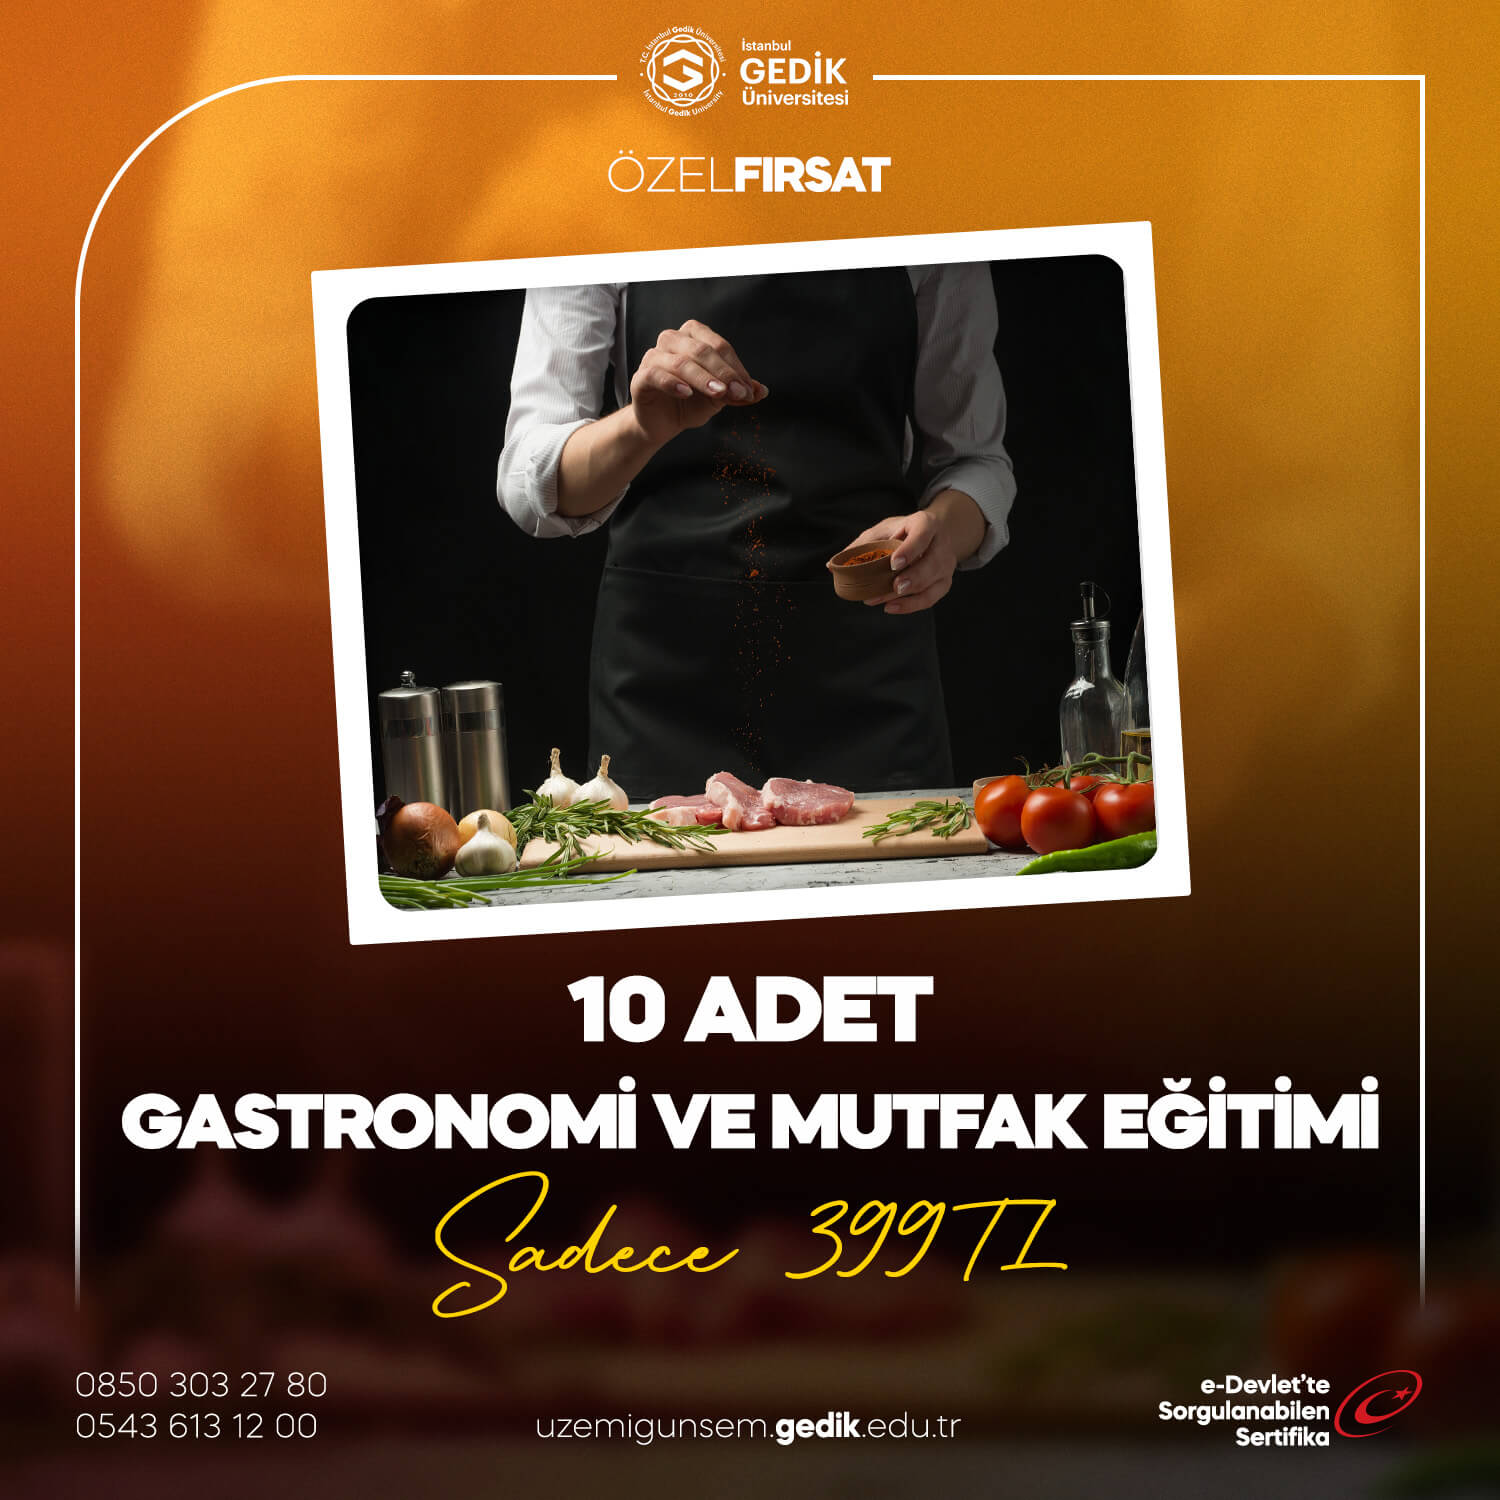 Gastronomi ve Mutfak Eğitimi (10) Adet 399TL!